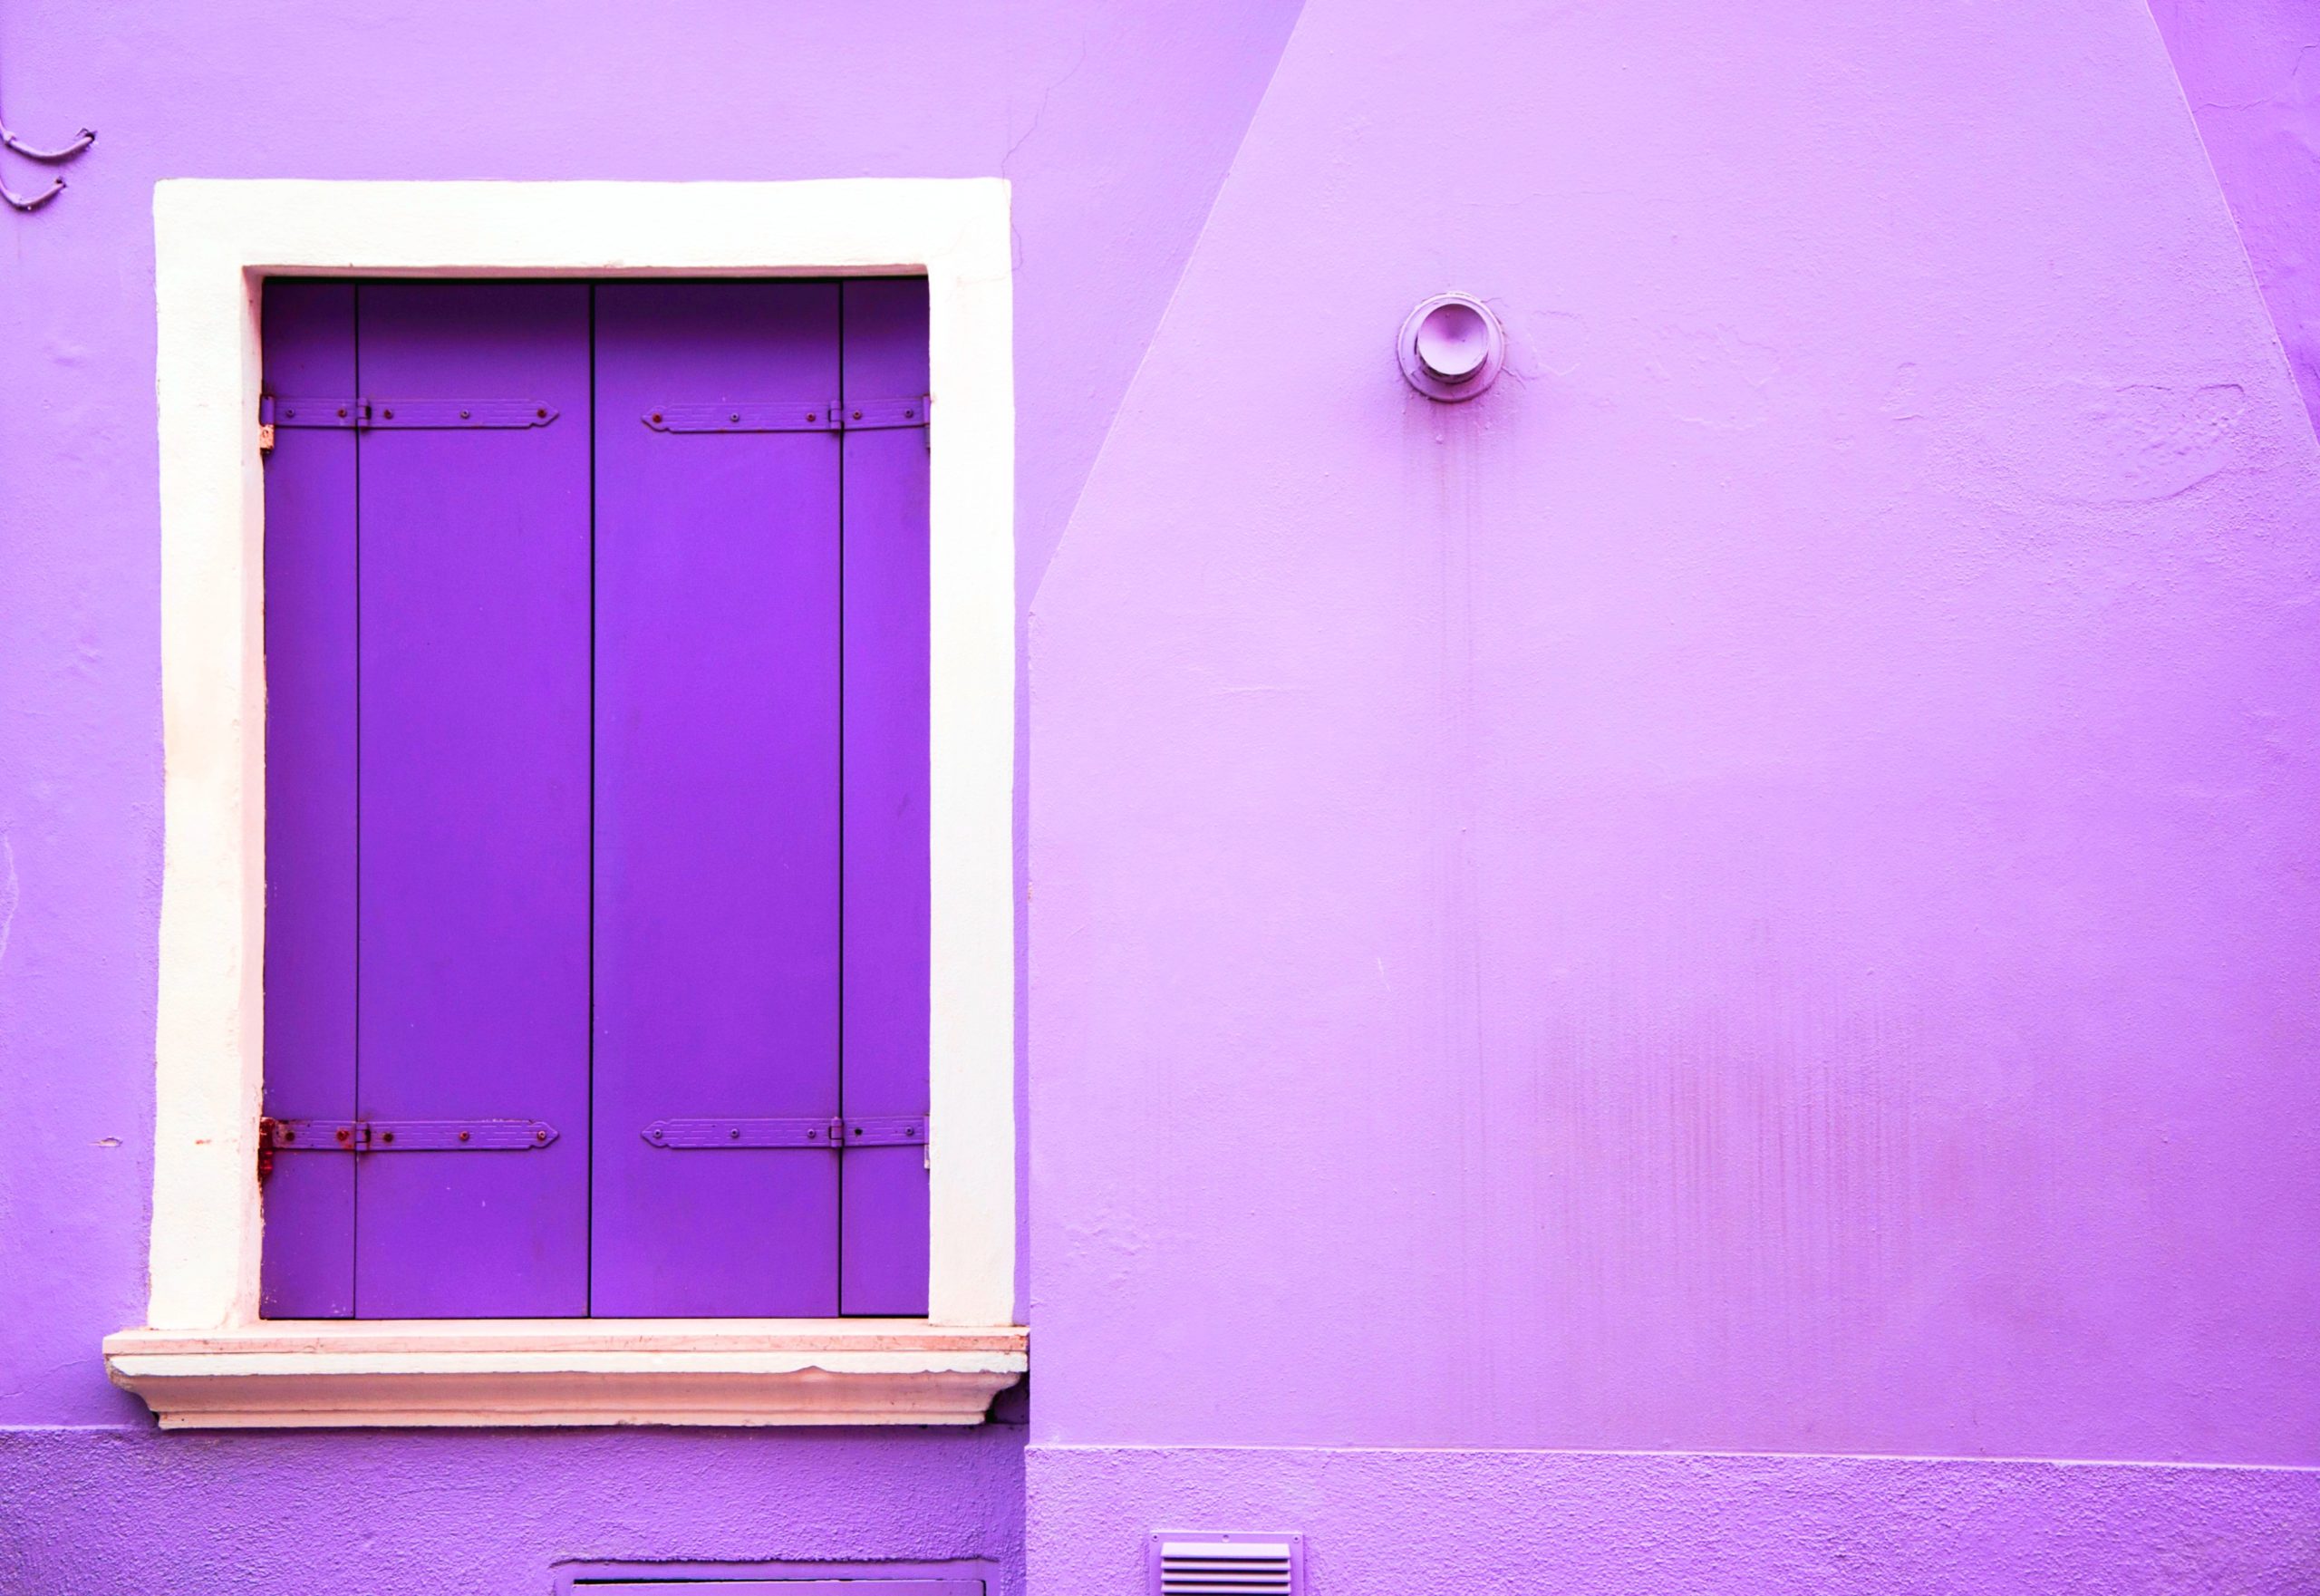 <img src="purple.jpg" alt="instagrammable purple house in london"/> 